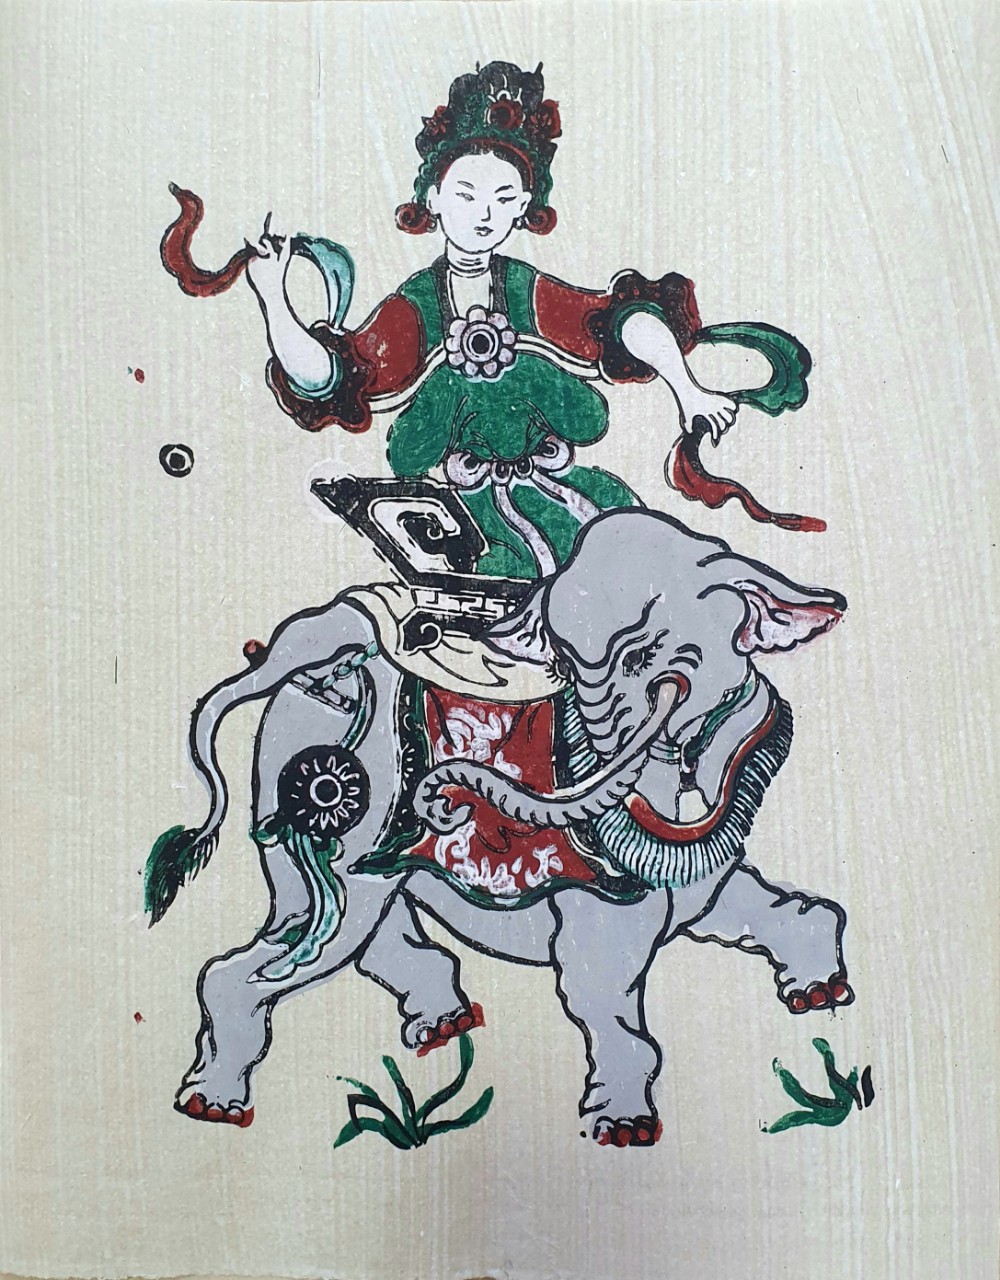 Tranh Bà Triệu - Tranh dân gian Đông Hồ - Dong Ho folk woodcut painting